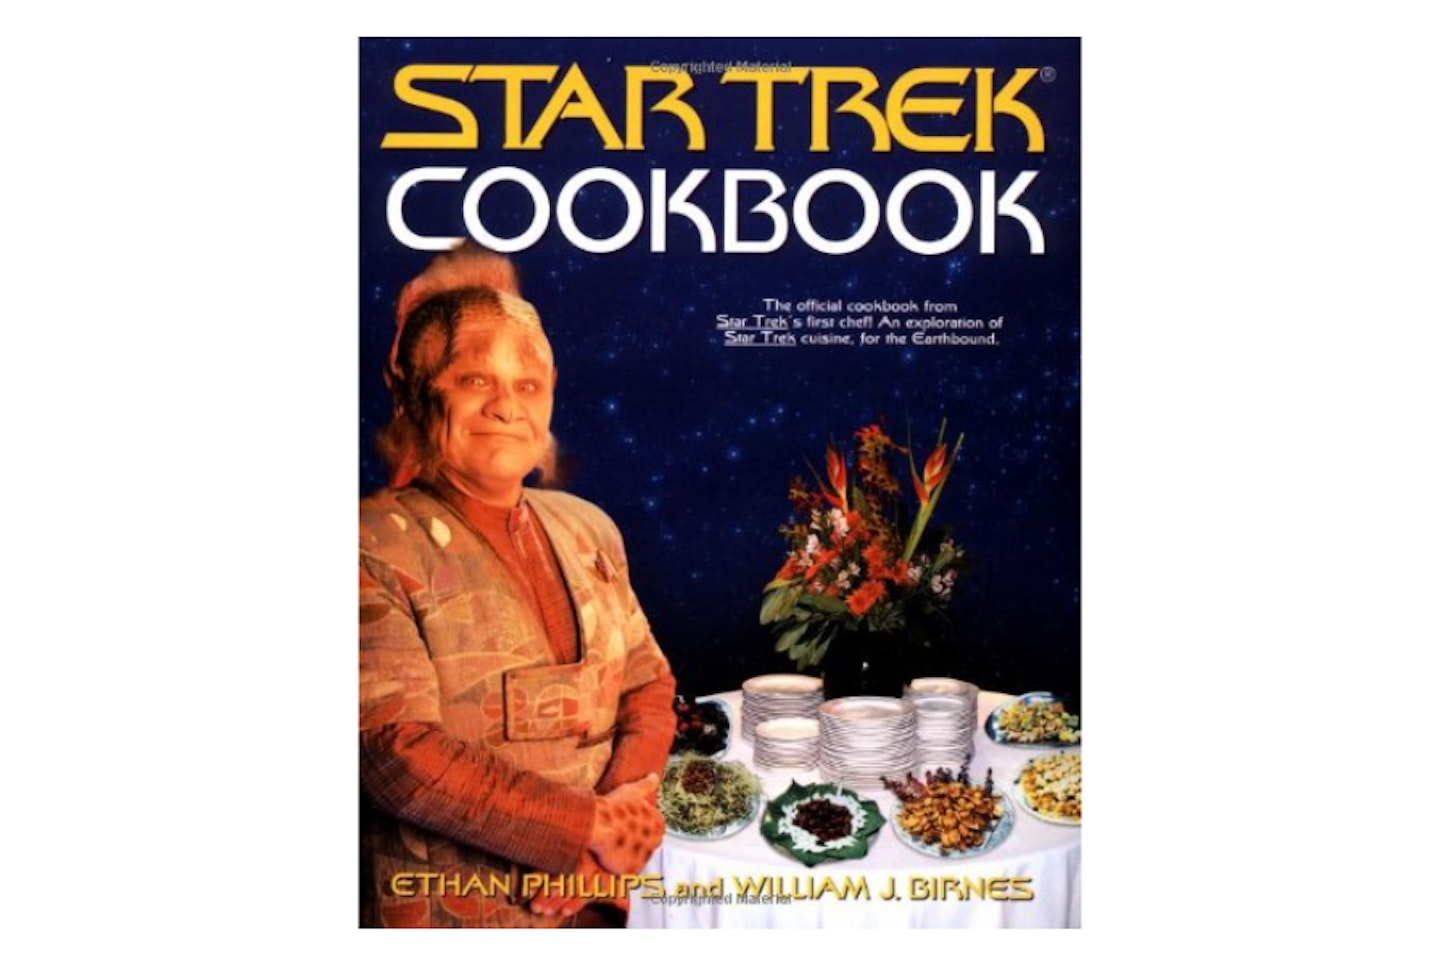 Star Trek Cookbook featuring Neelix